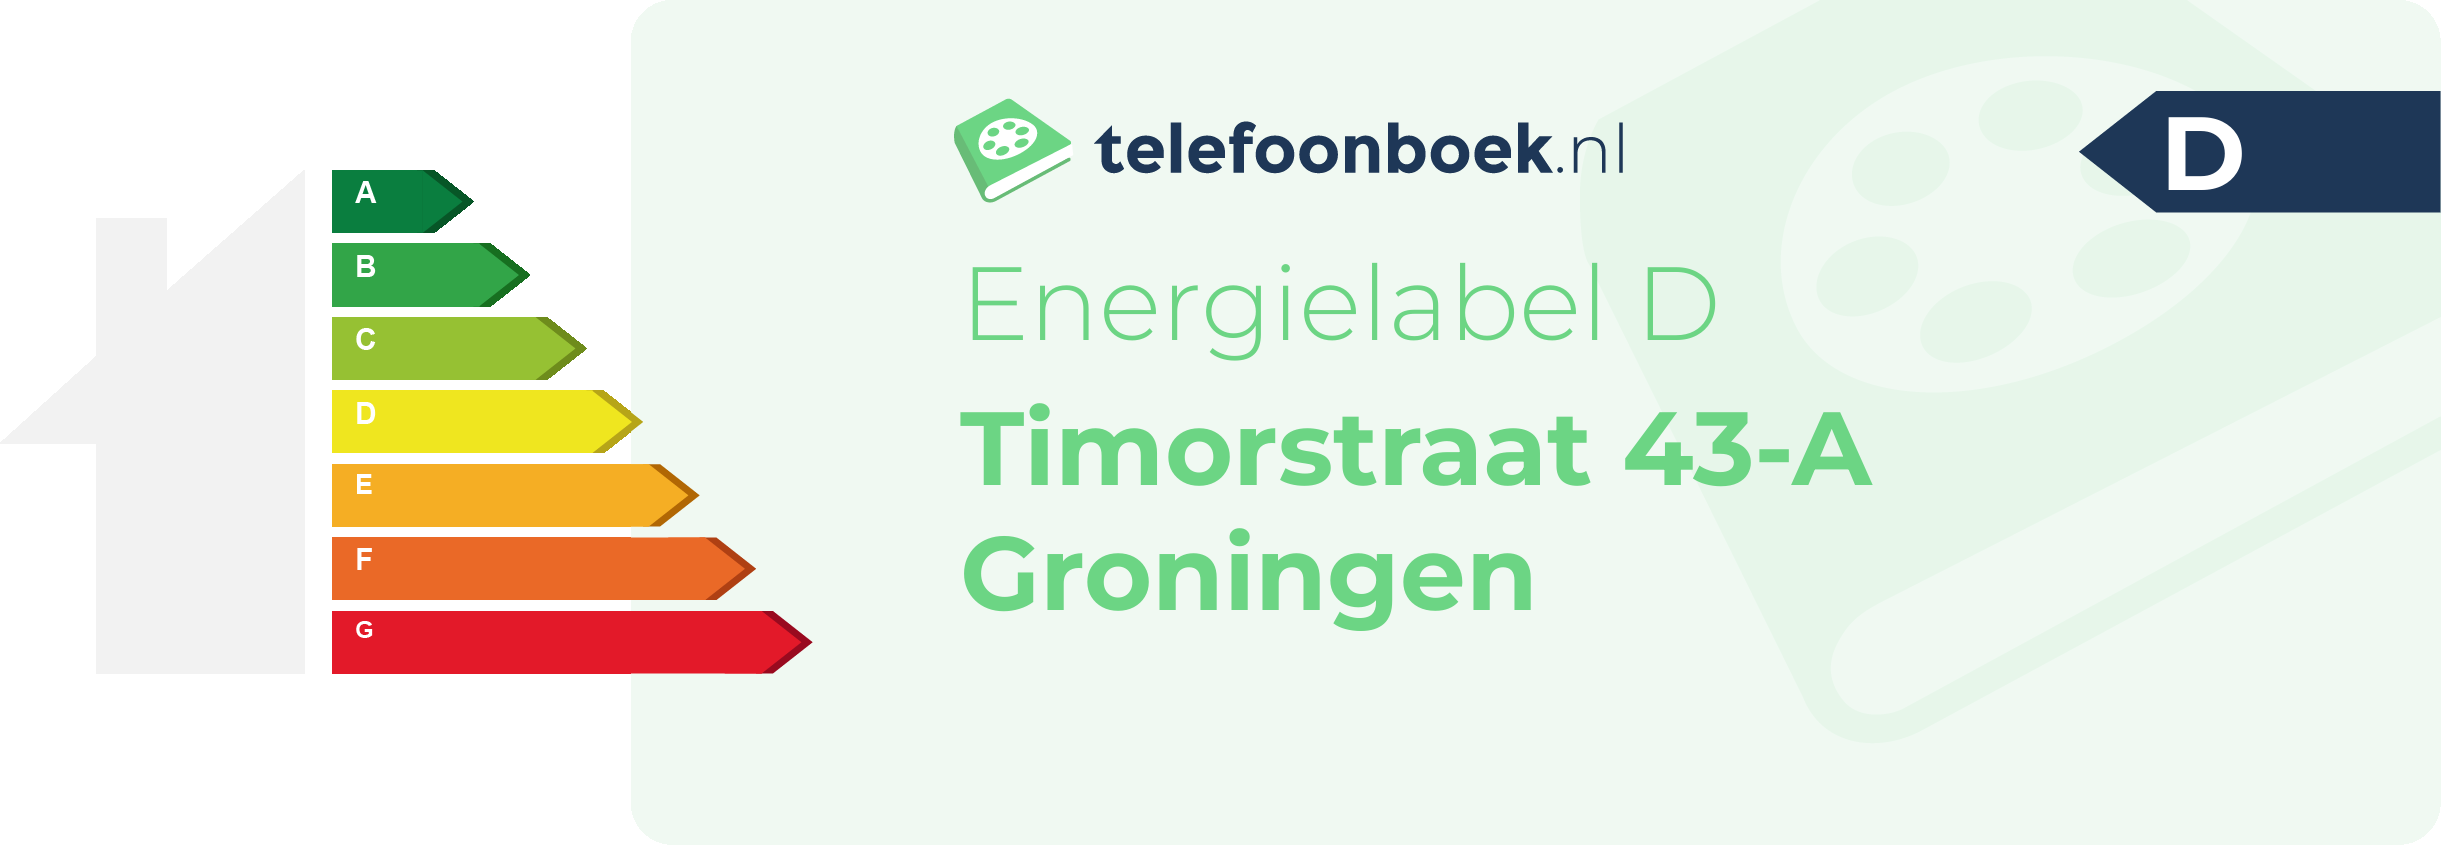 Energielabel Timorstraat 43-A Groningen